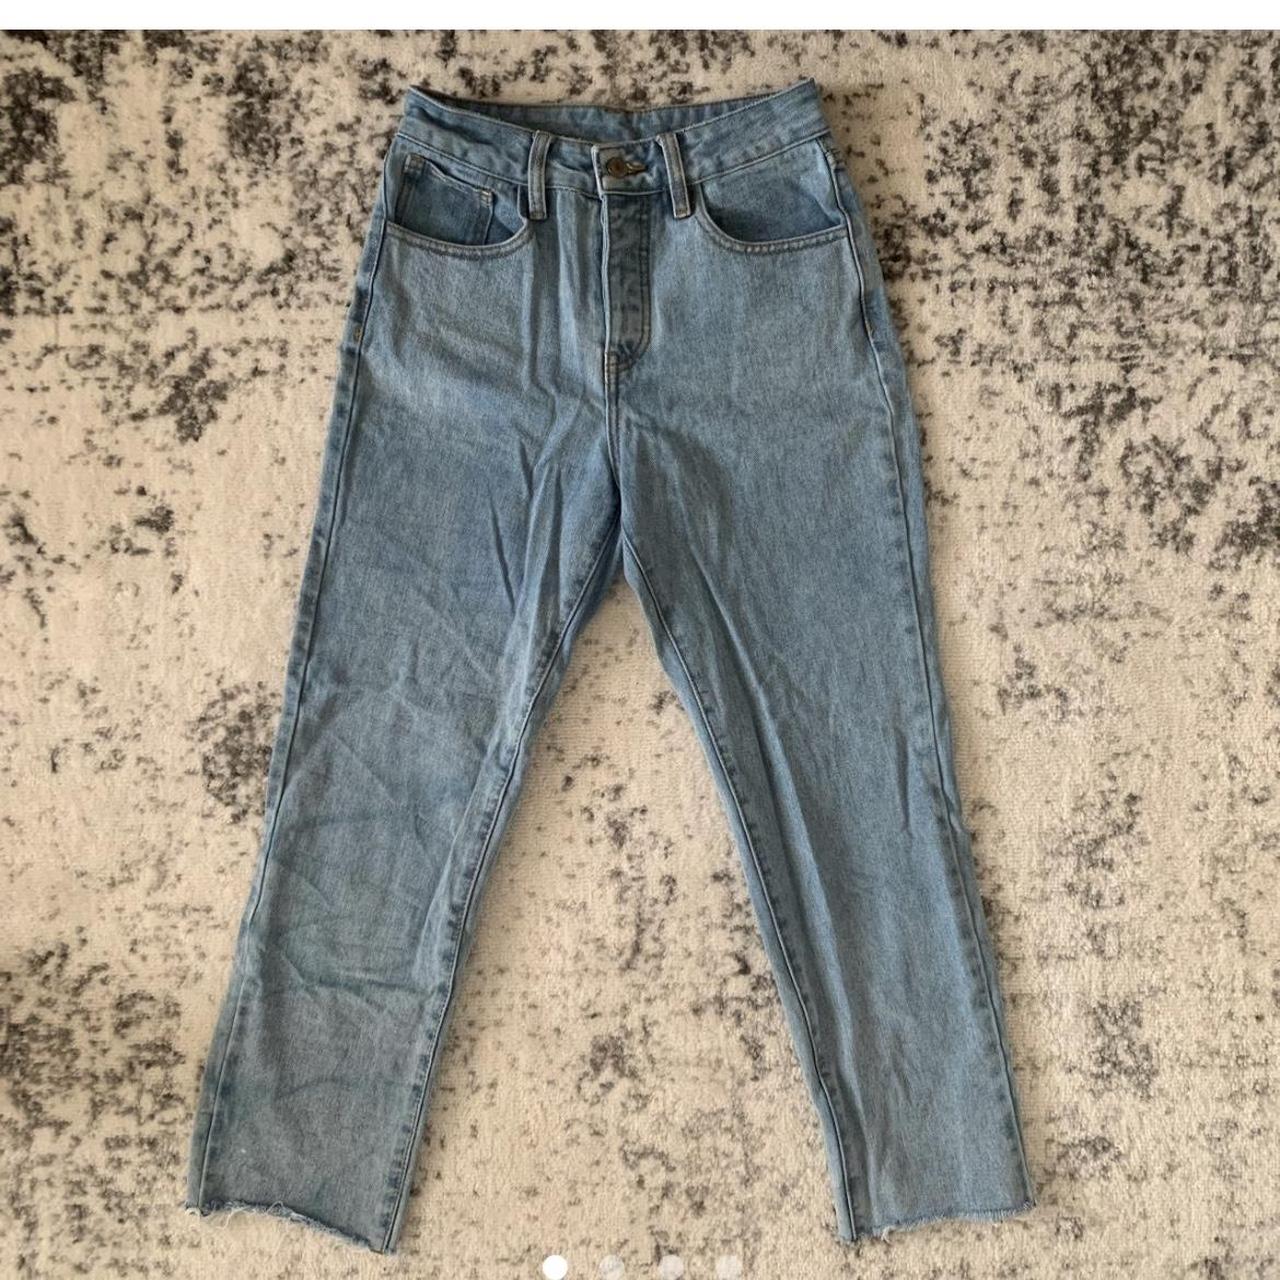 Brandy Melville John Galt High Waist Jeans I love... - Depop